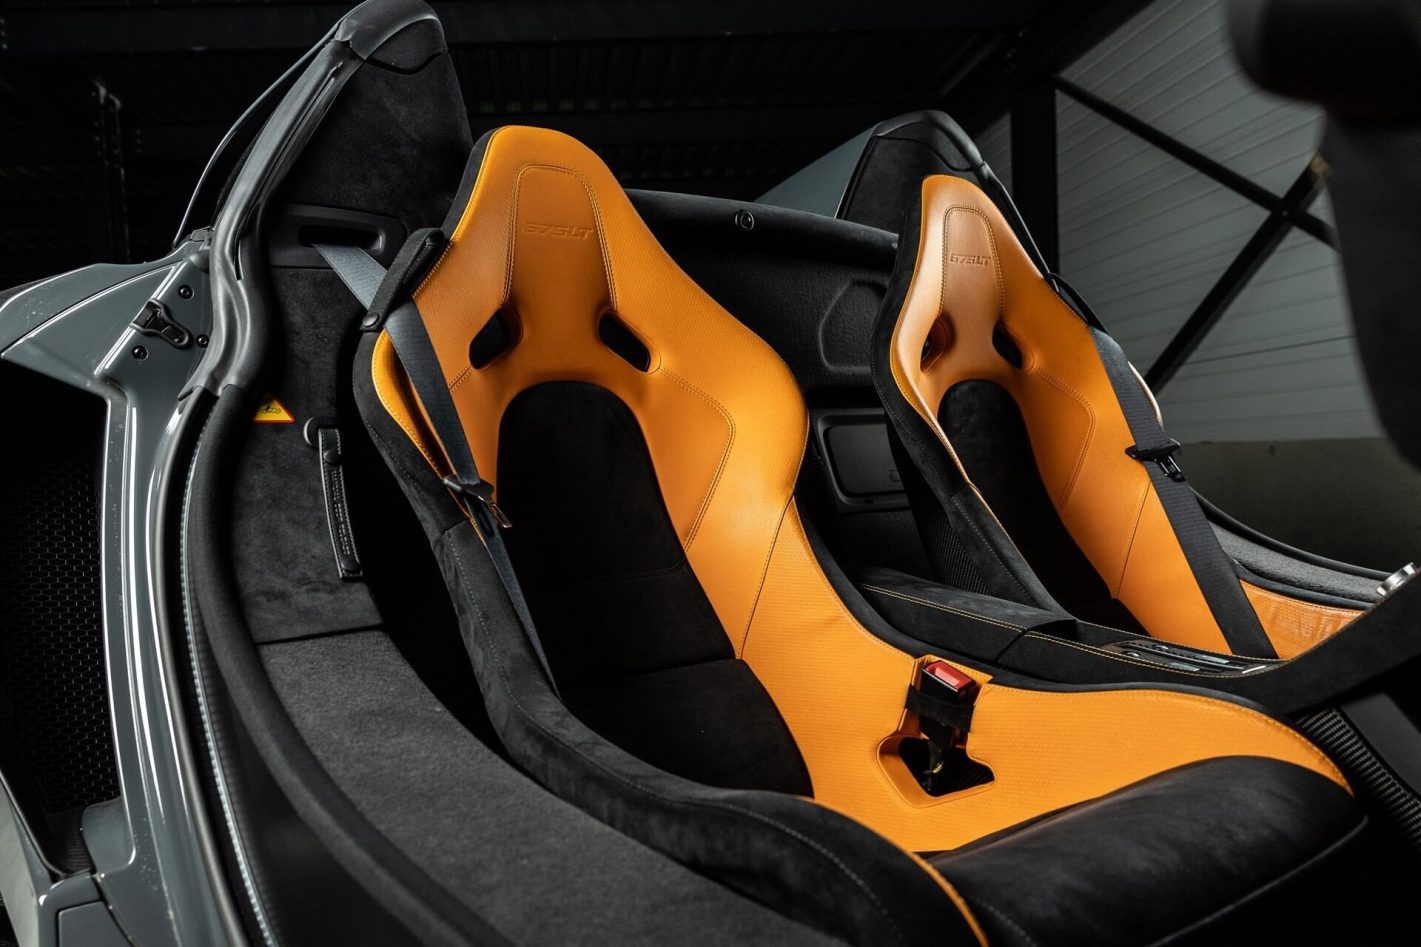 FOR SALE: McLaren 675LT Spider, Cars for sale, McLaren, mclaren 675LT, RM Sotheby’s